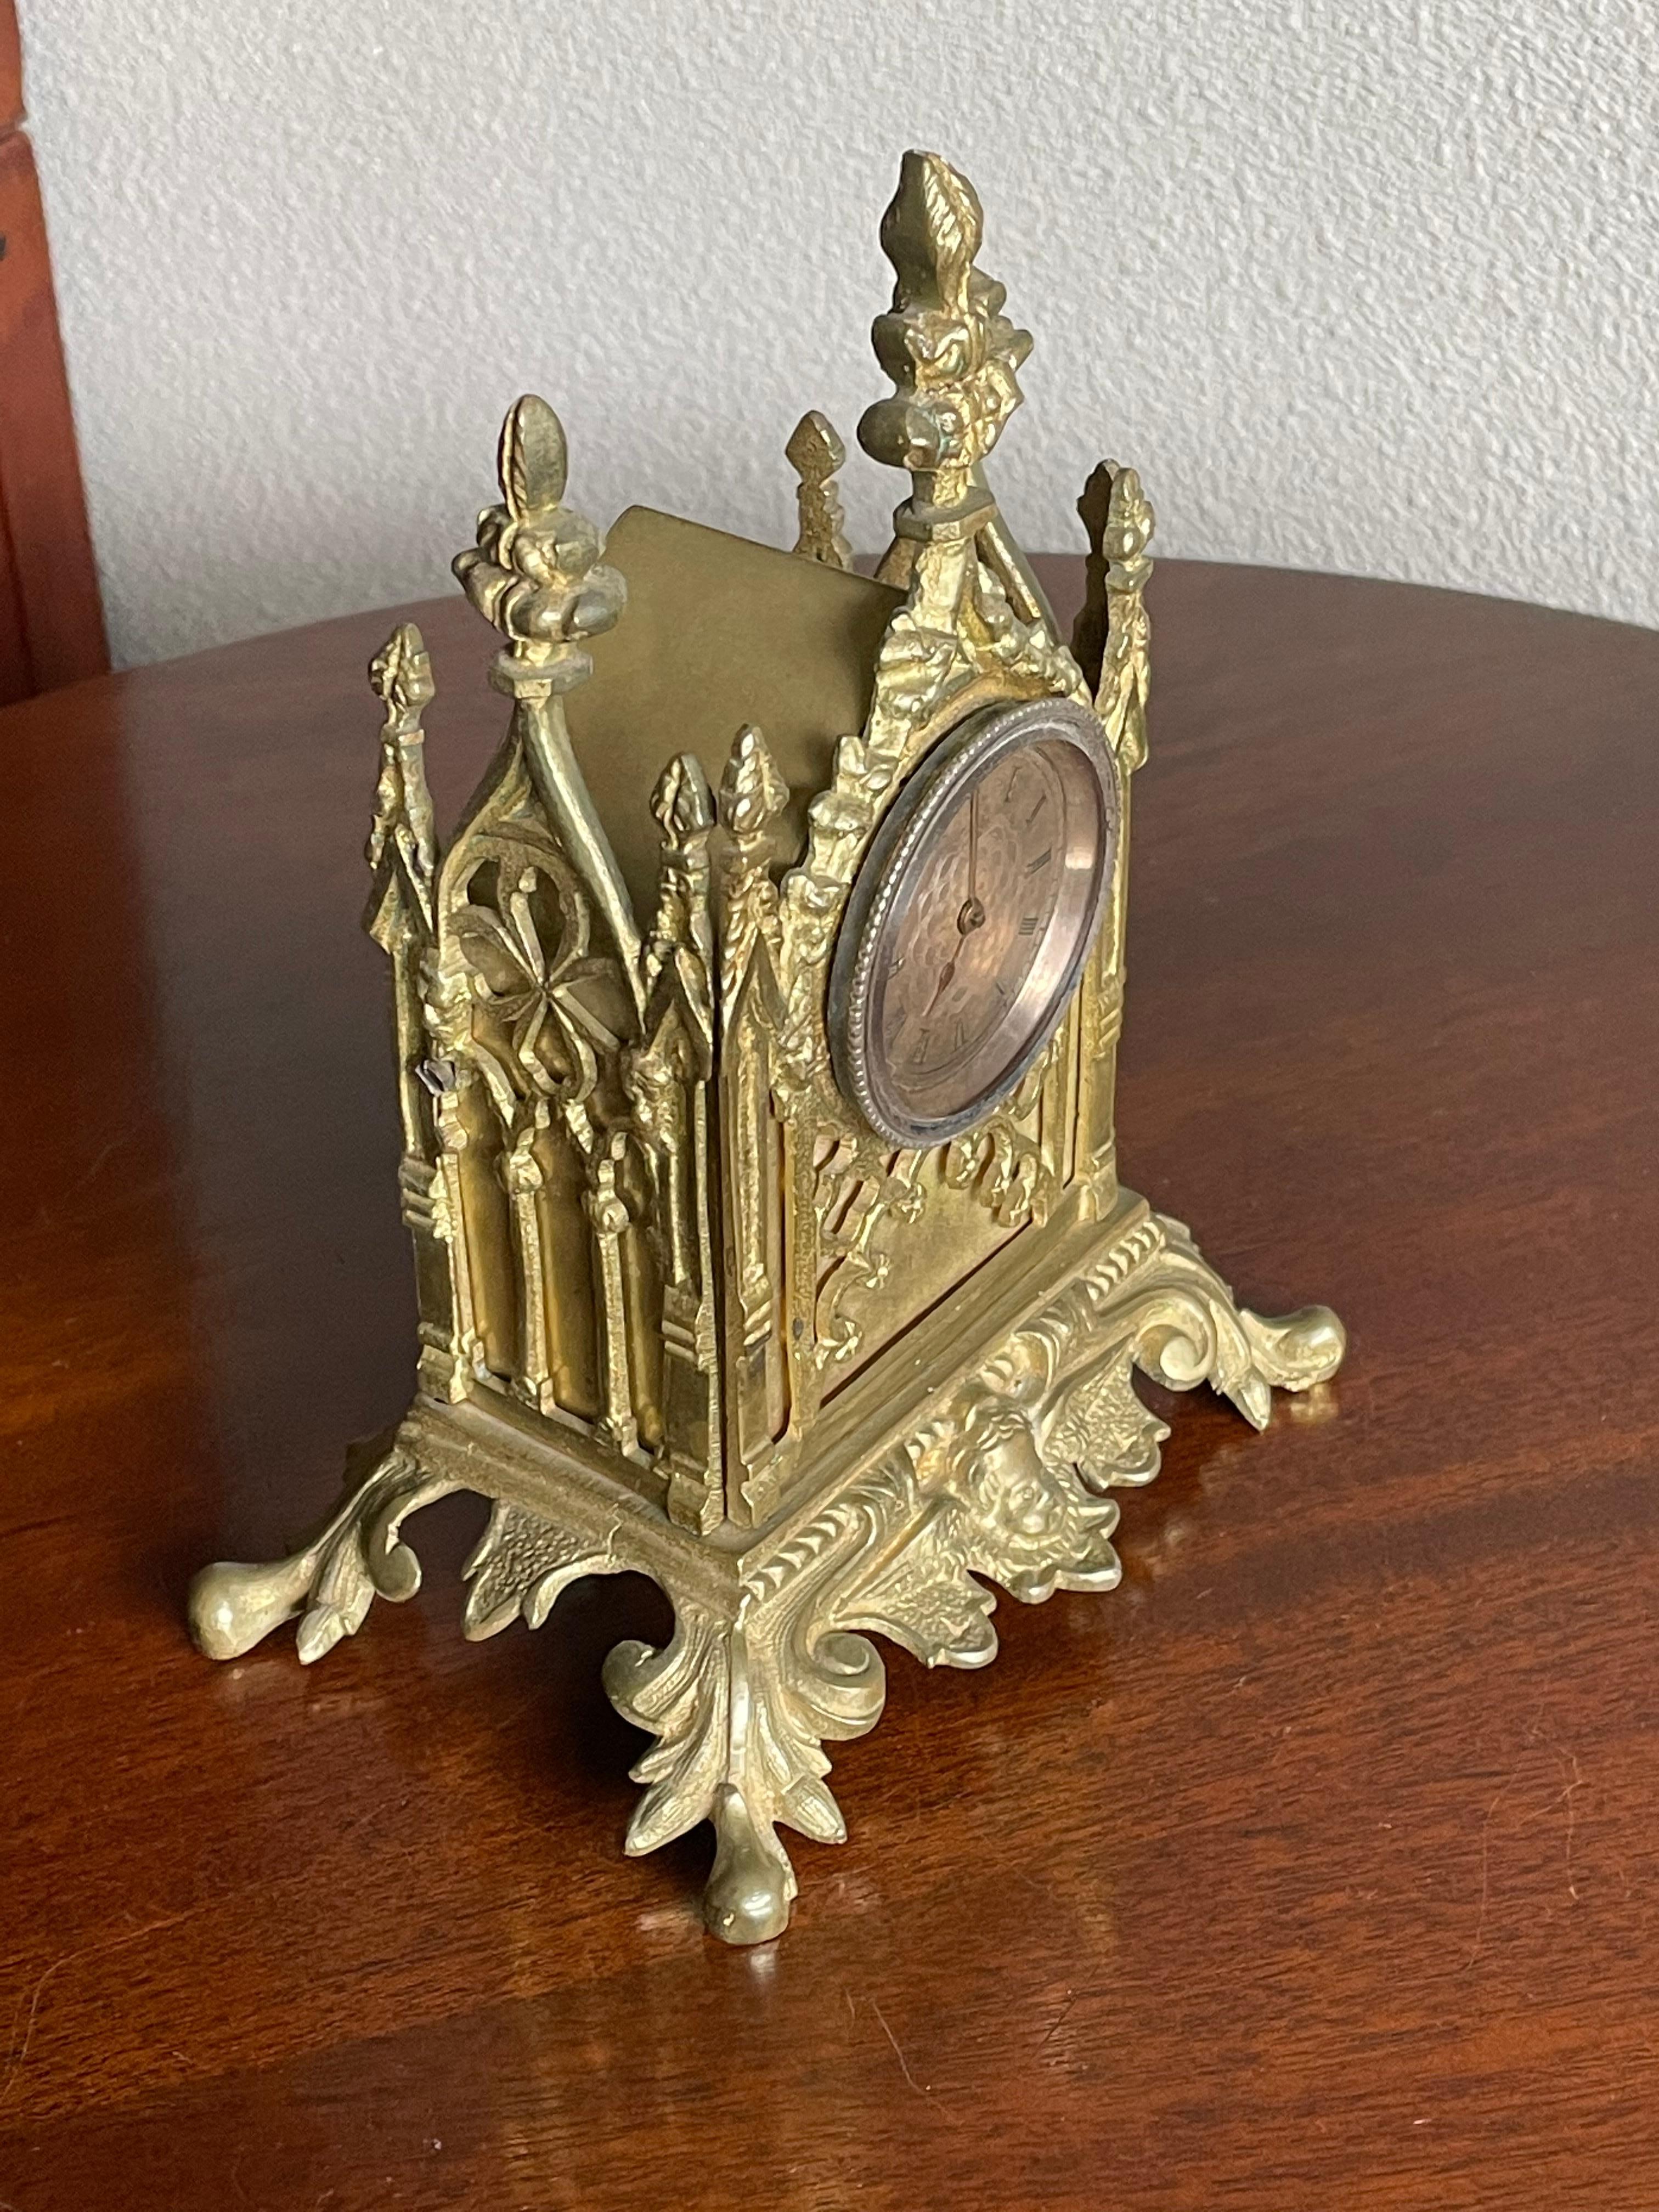 Petite horloge de table gothique avec montre de poche en bronze doré (ou peut-être en or) par John Worboys de Londres, 1780-1810.

Nous en savons trop peu sur les montres de poche anciennes pour être en mesure de vous dire si la montre de poche qui